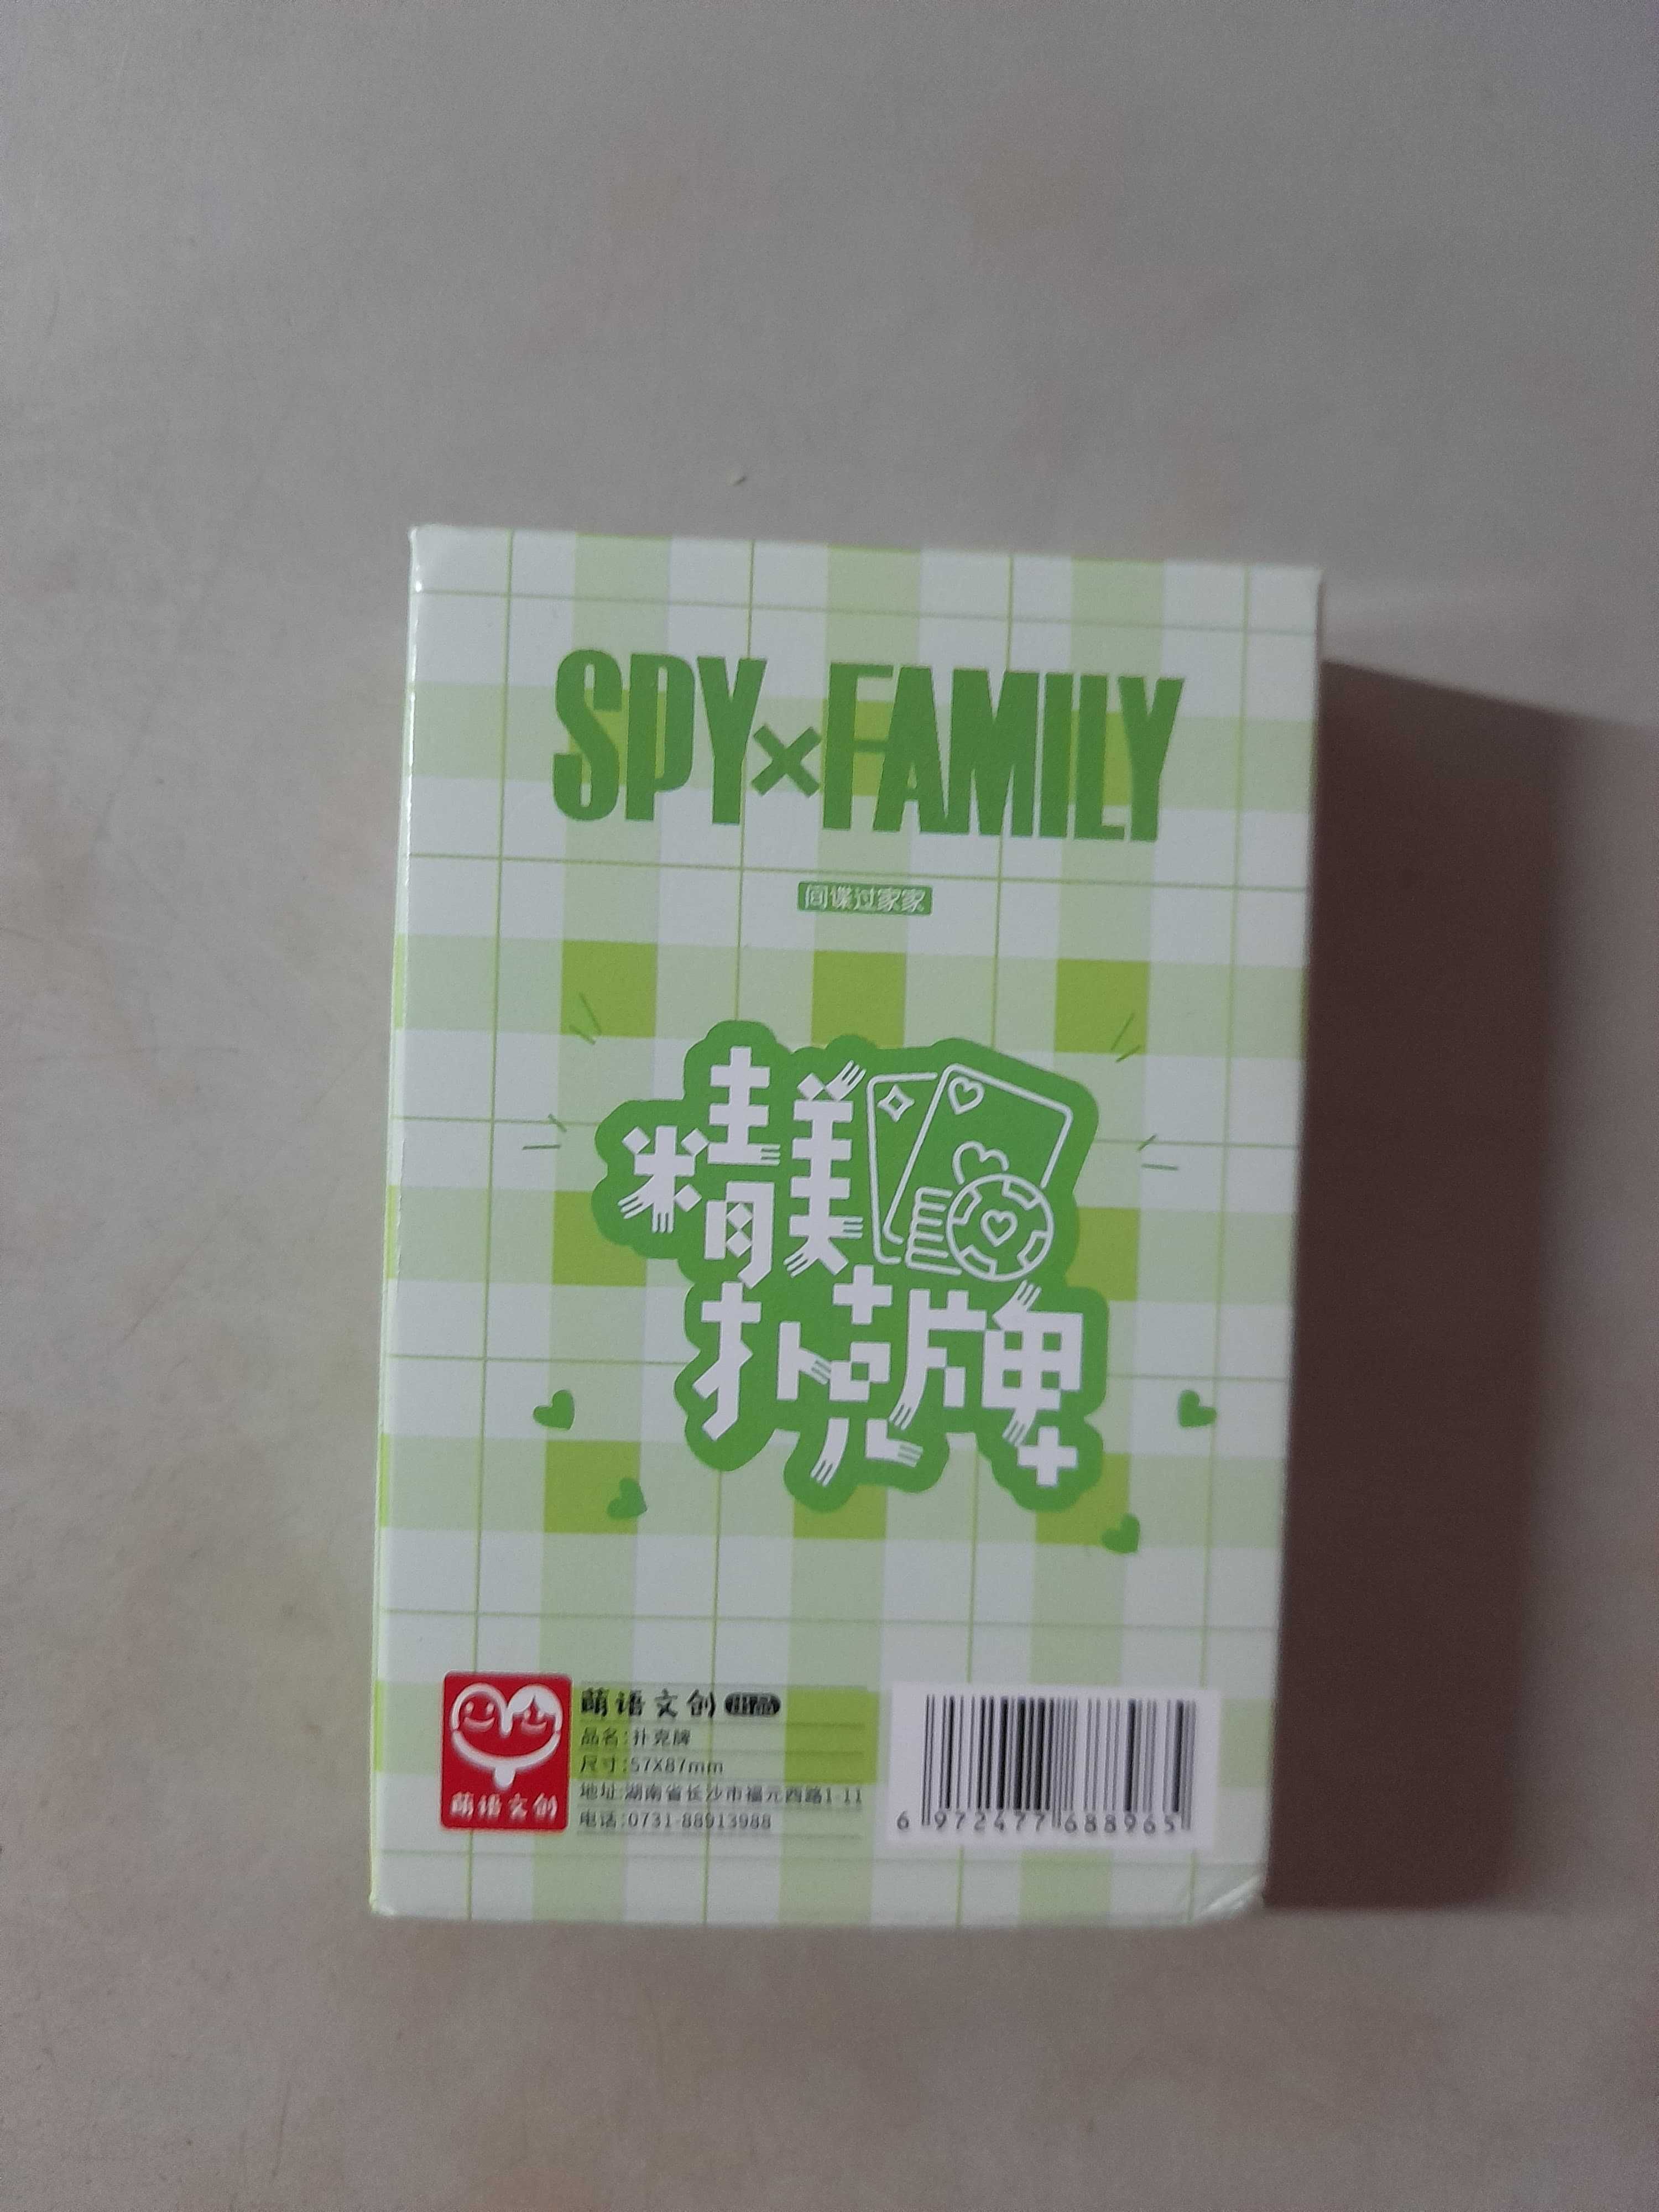 Spy X Family - Cartii de joc